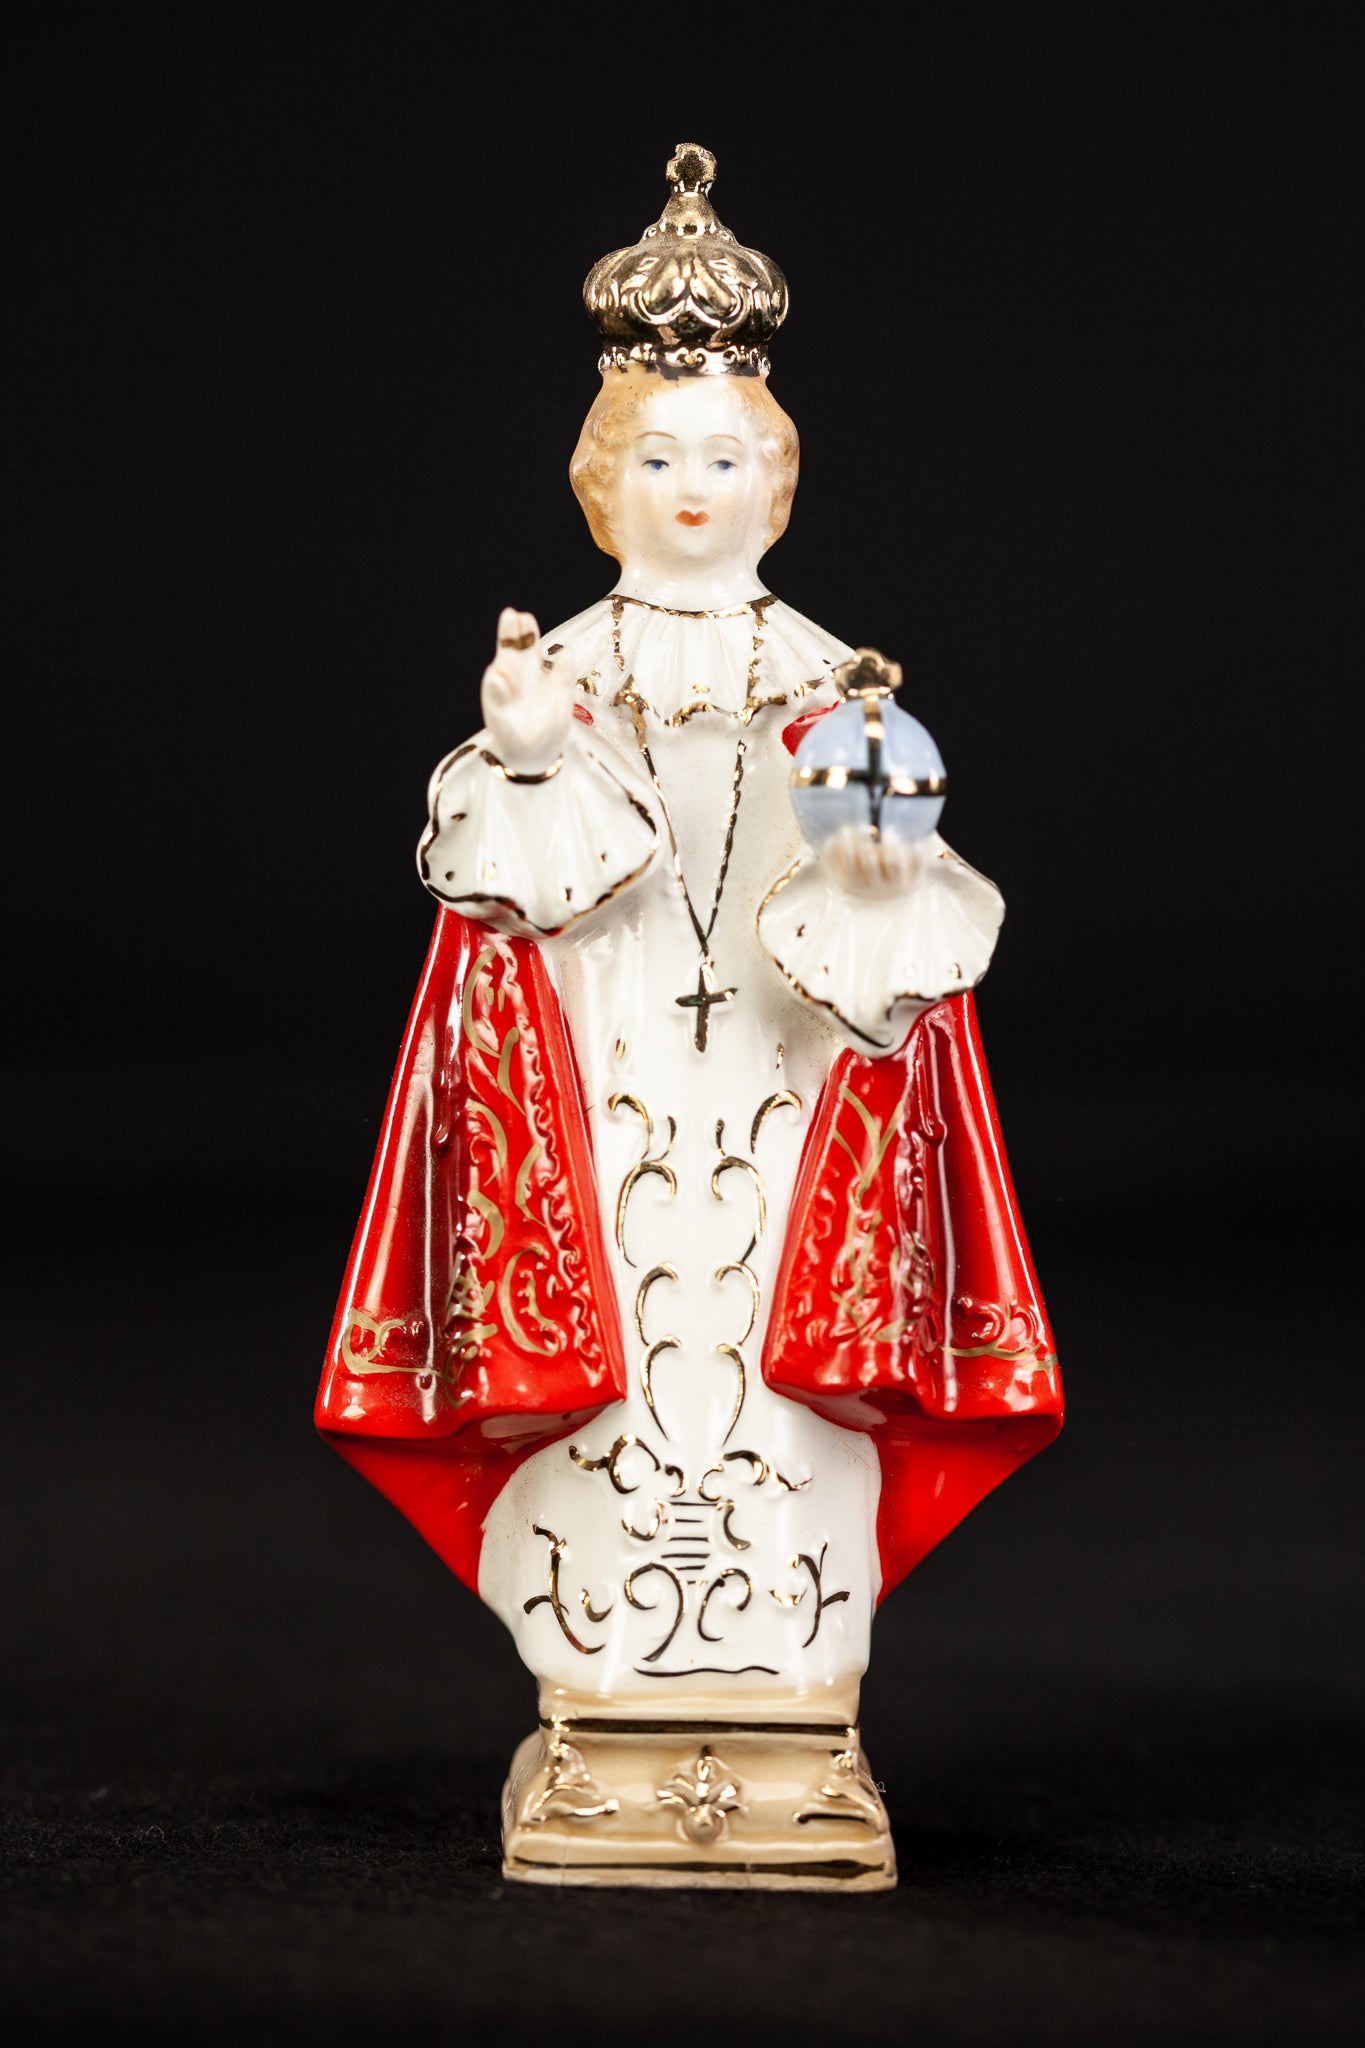  Infant Jesus of Prague Porcelain Statue